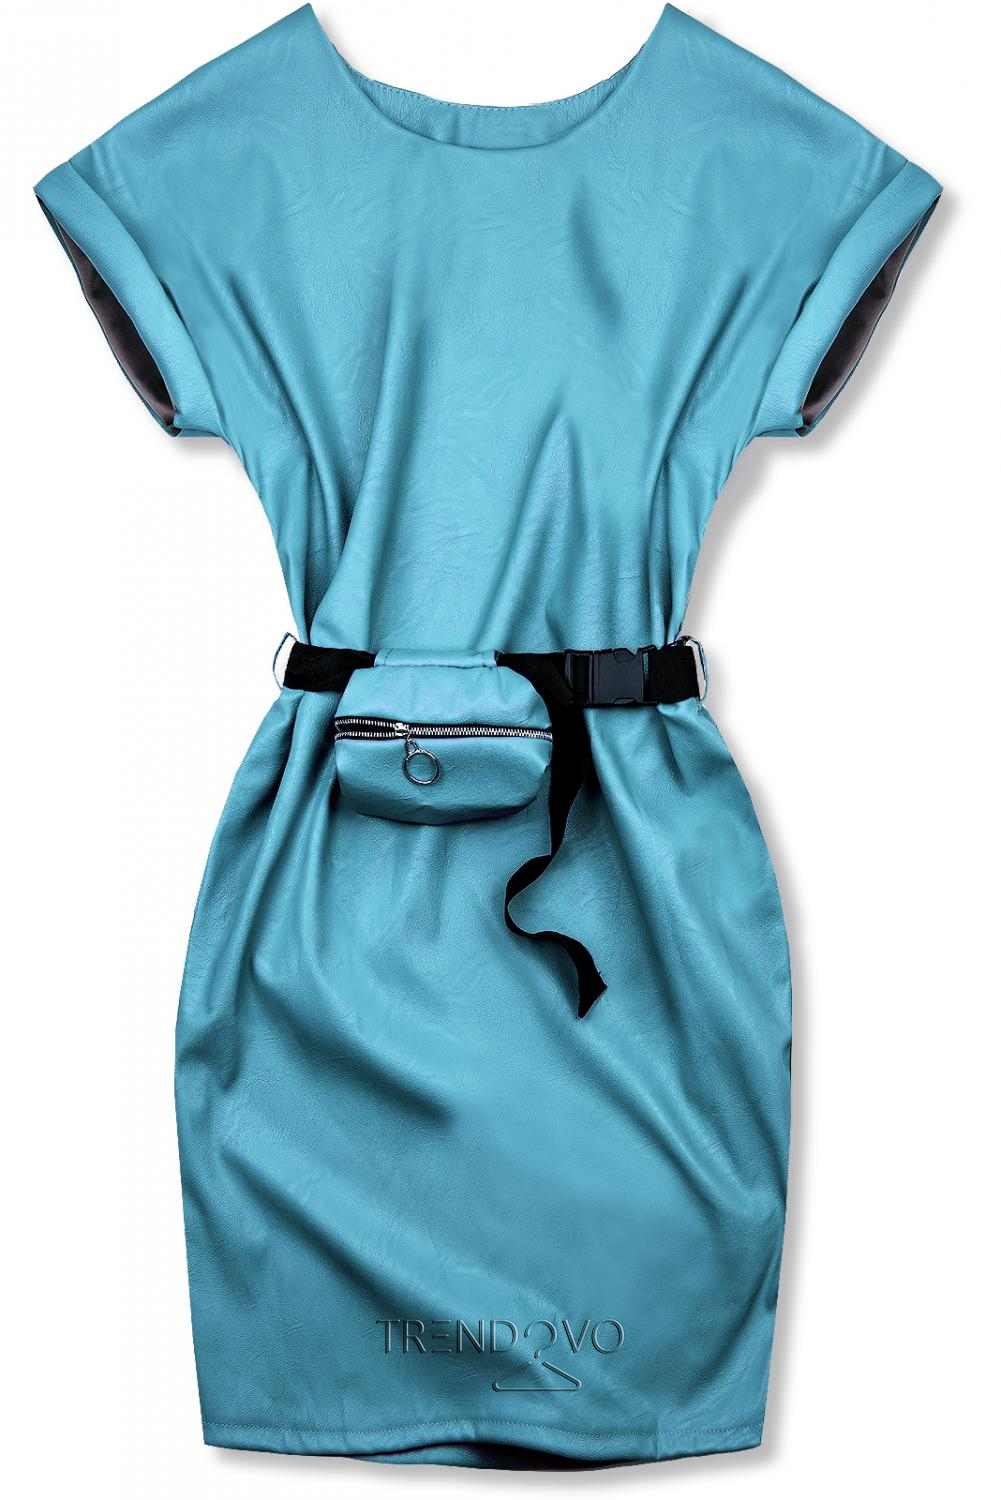 Modré koženkové šaty